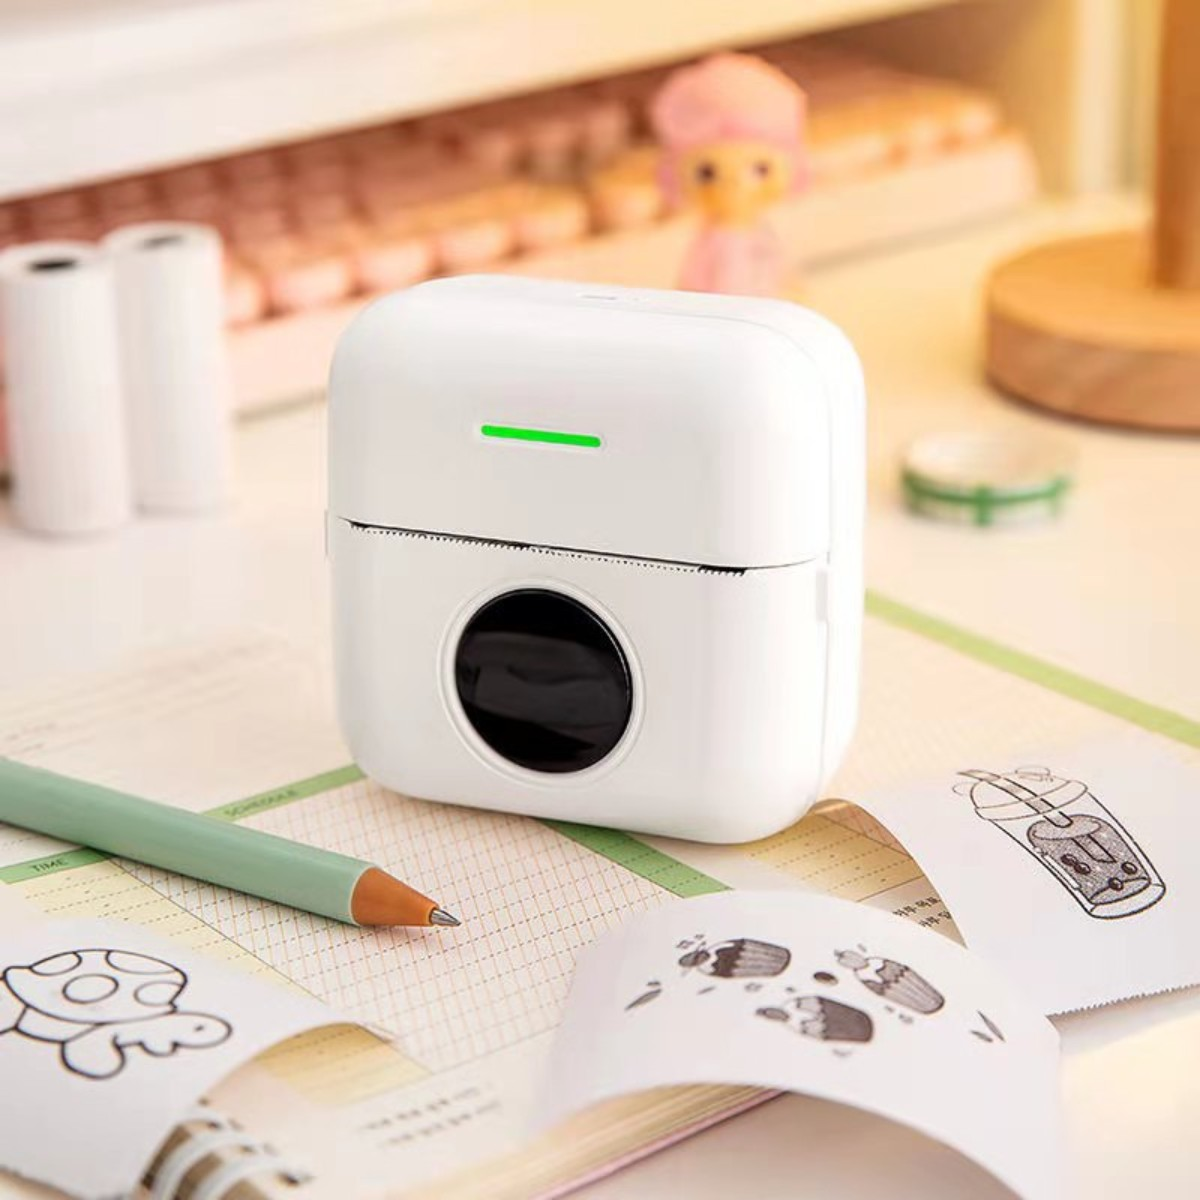 SYNTEK Bluetooth-Thermodrucker - Der Thermodruck Thermodrucker zum Prüfen-Weiß perfekte Kinder Zeichnen Drucker und für Lernen